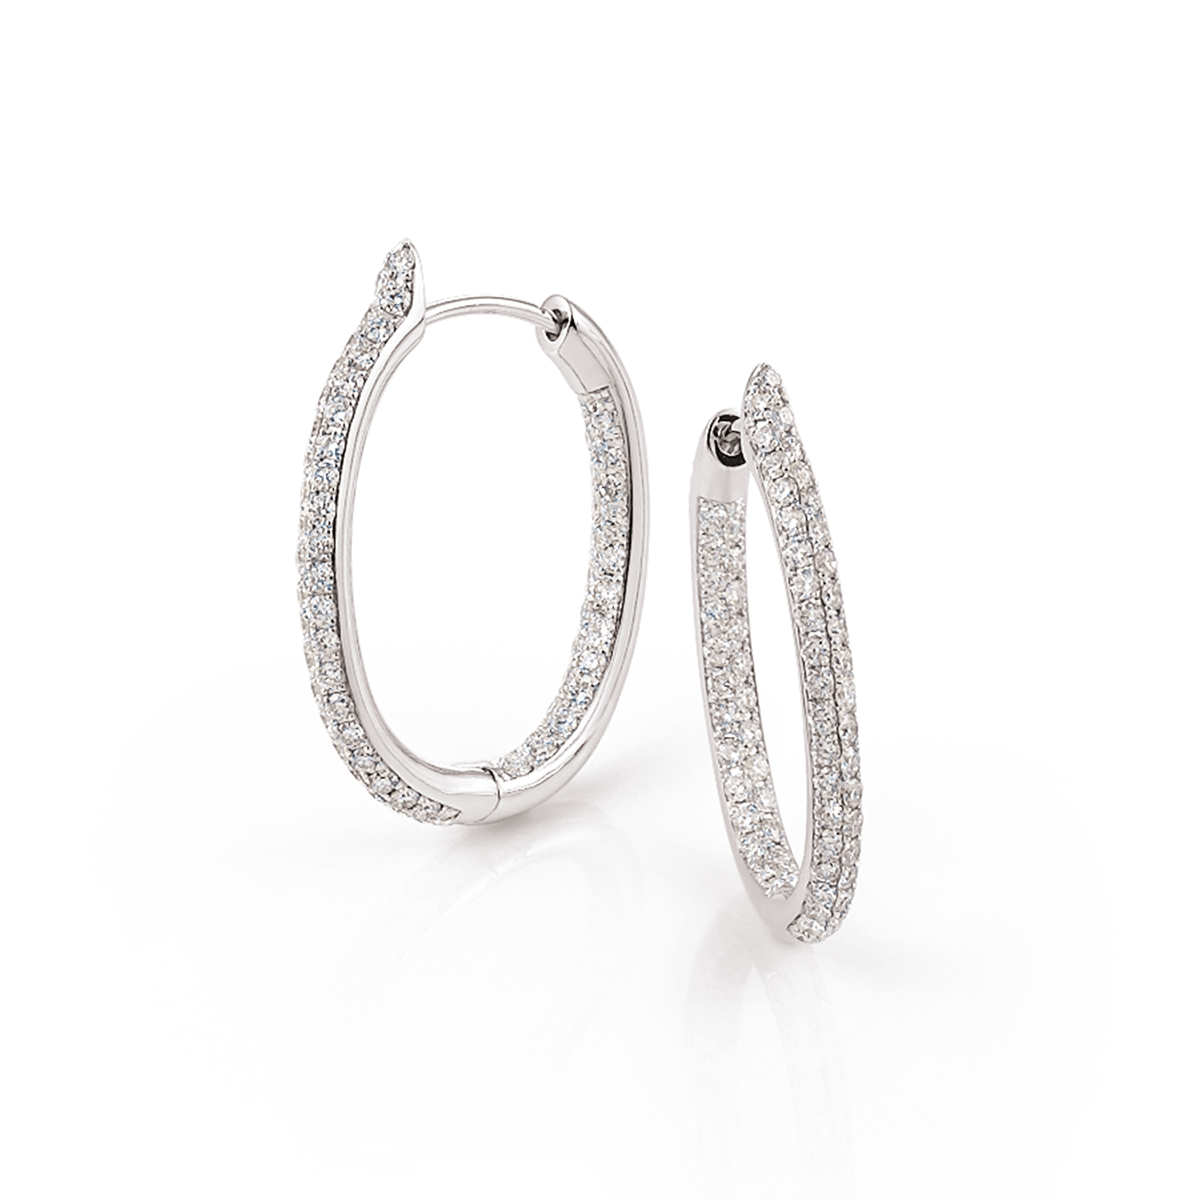 Al Coro Amori Earrings in 18k White Gold with Diamonds - Orsini Jewellers NZ